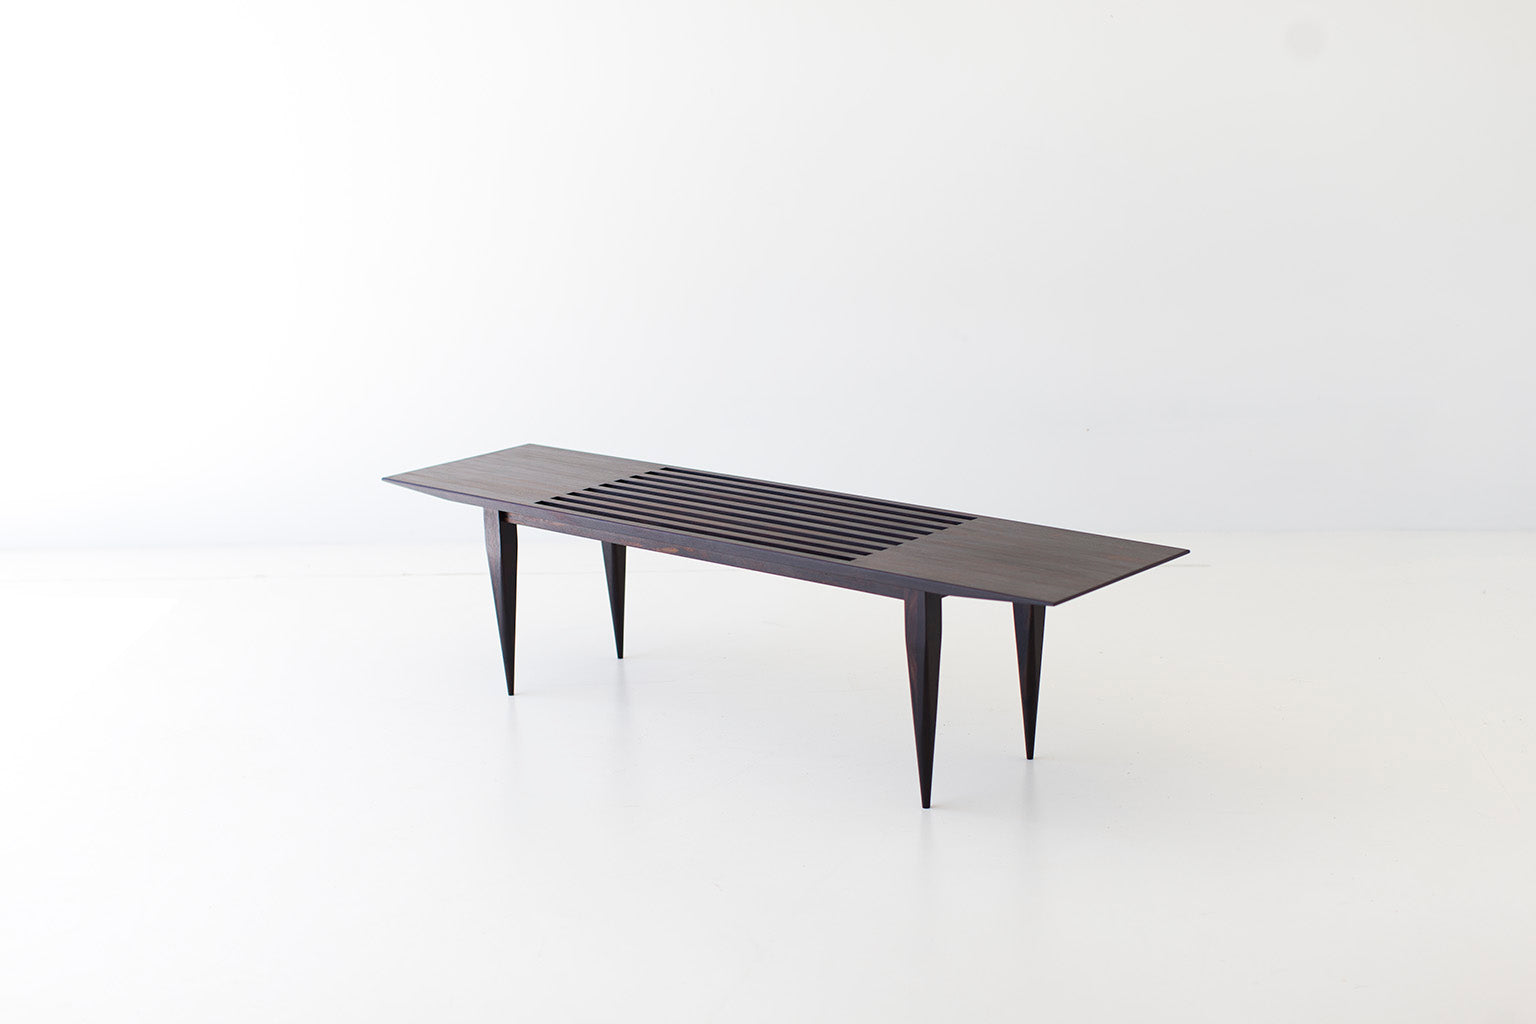  Modern Slatted Bench 1602 J Bench Craft Associates® Furniture, Image 04